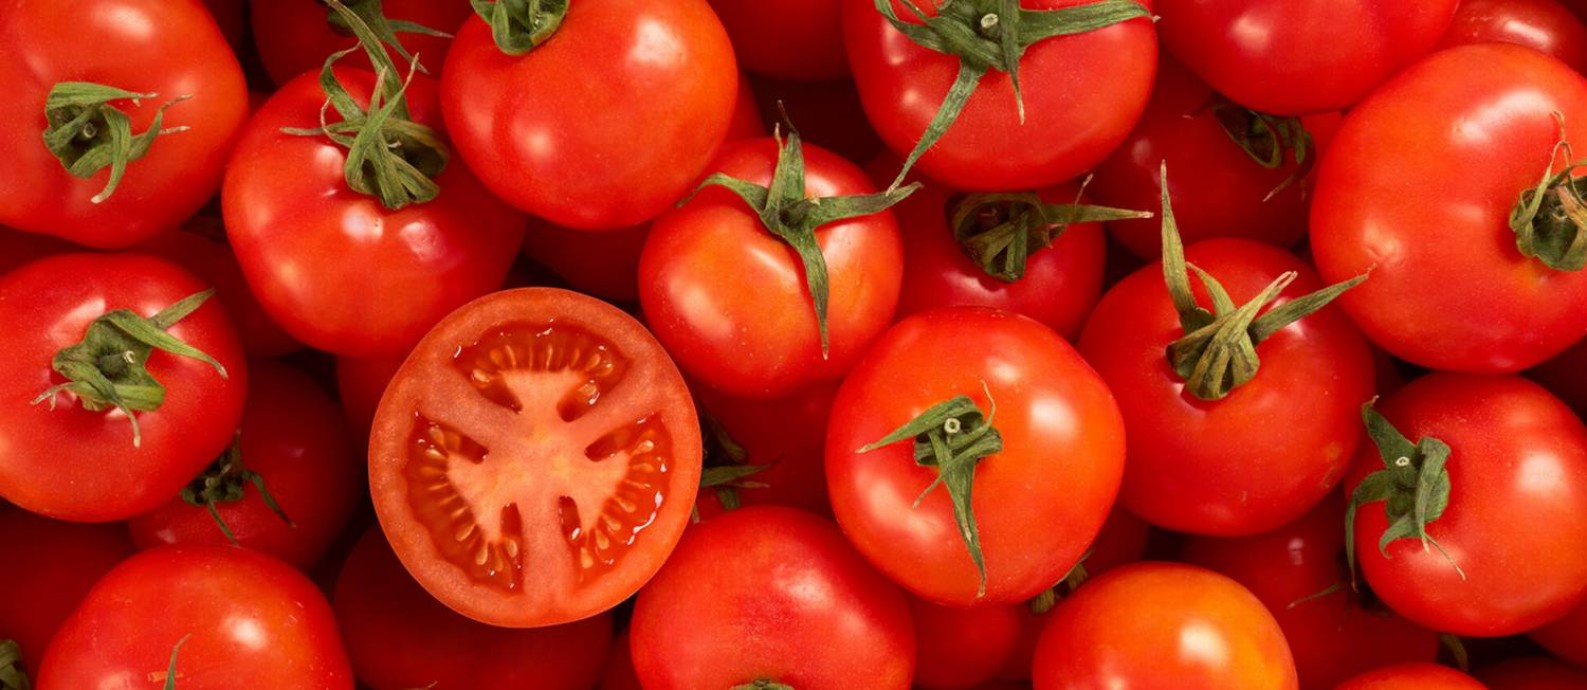 O tomate foi um dos itens que mais subiram no supermercado nos últimos meses Foto: hdagli / Getty Images